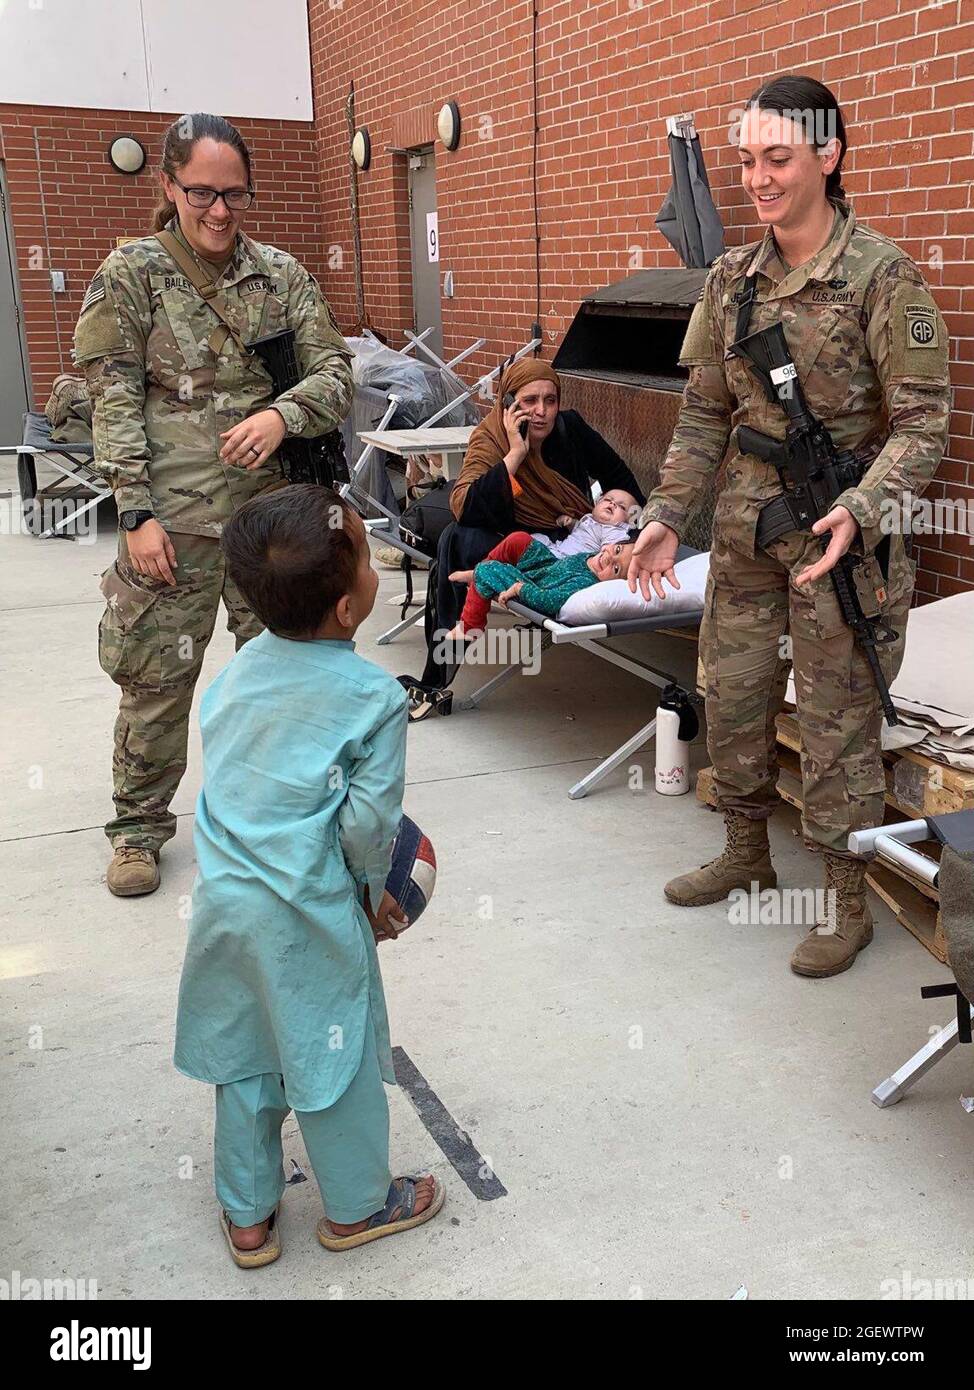 KABUL, AFGHANISTAN - die Spezialistin Julie Bailey und Sergeant Breanna Jessop mit der 82. Airborne Division des XVIII Airborne Corps spielen am Hamid Karzai International Airport im August 20 den Catch mit einem afghanischen Kind. Stockfoto